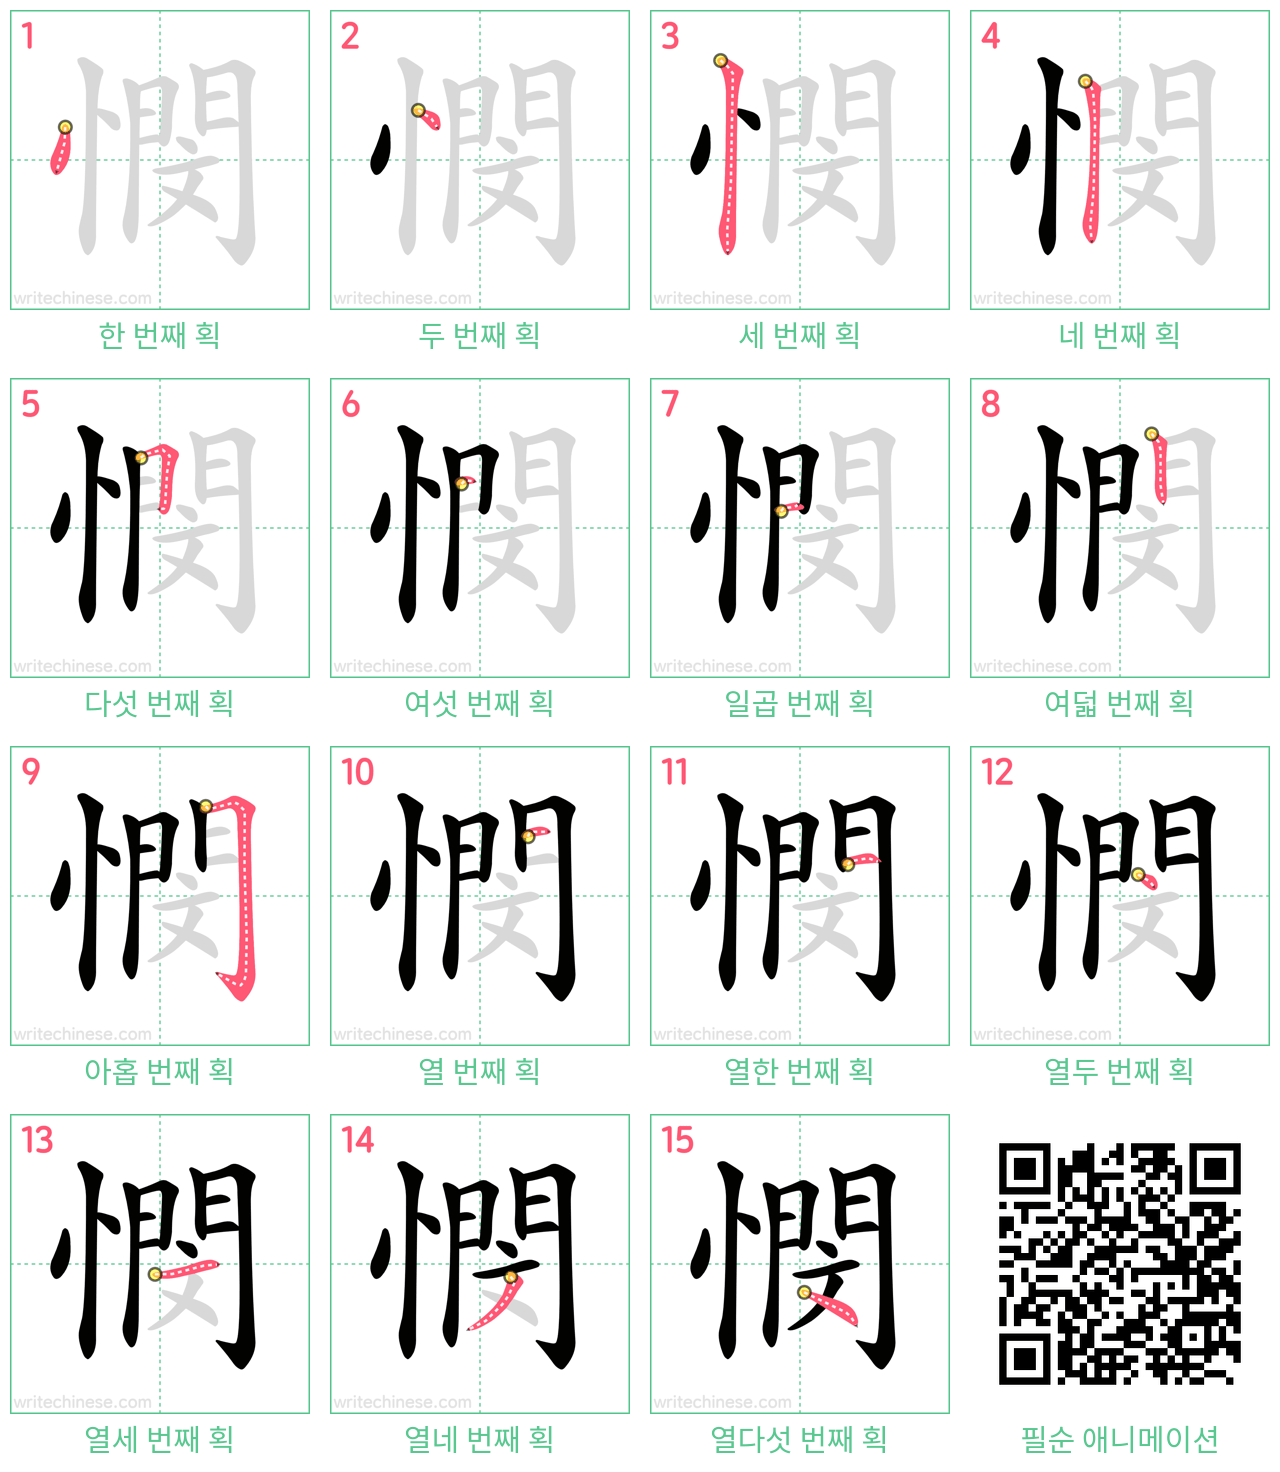 憫 step-by-step stroke order diagrams